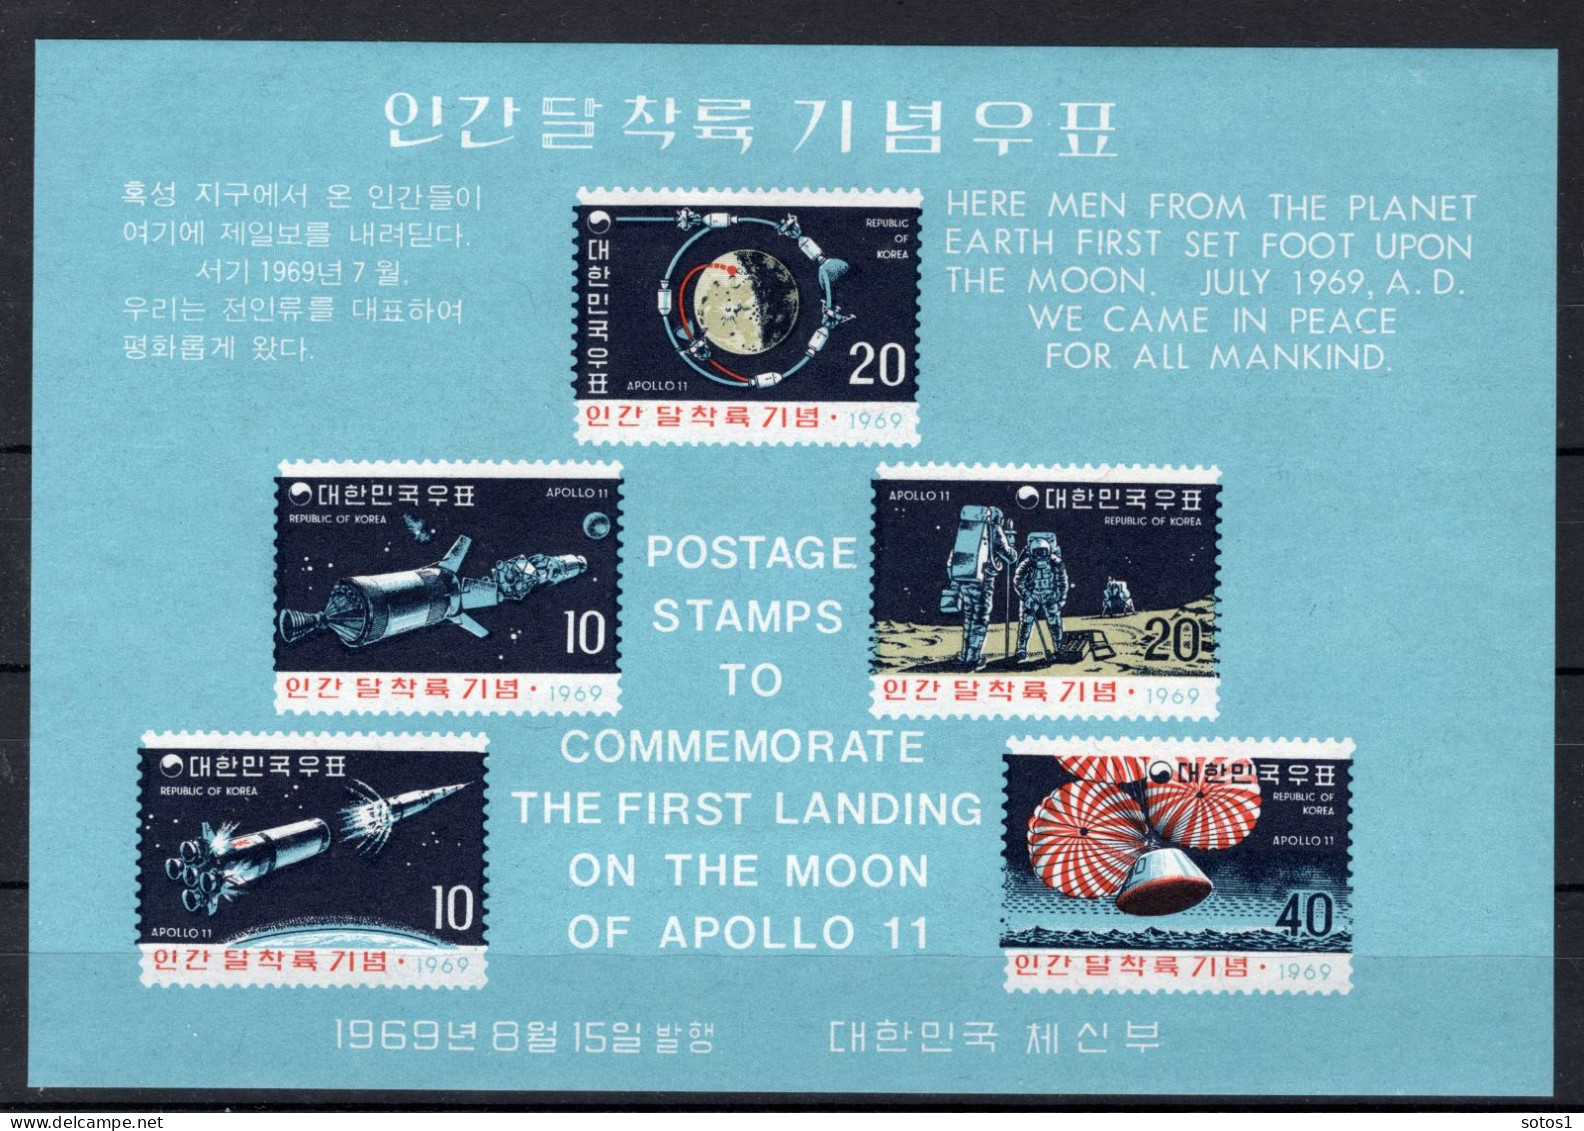 KOREA-ZUID Yt. BF162 MH 1969 - Corée Du Sud